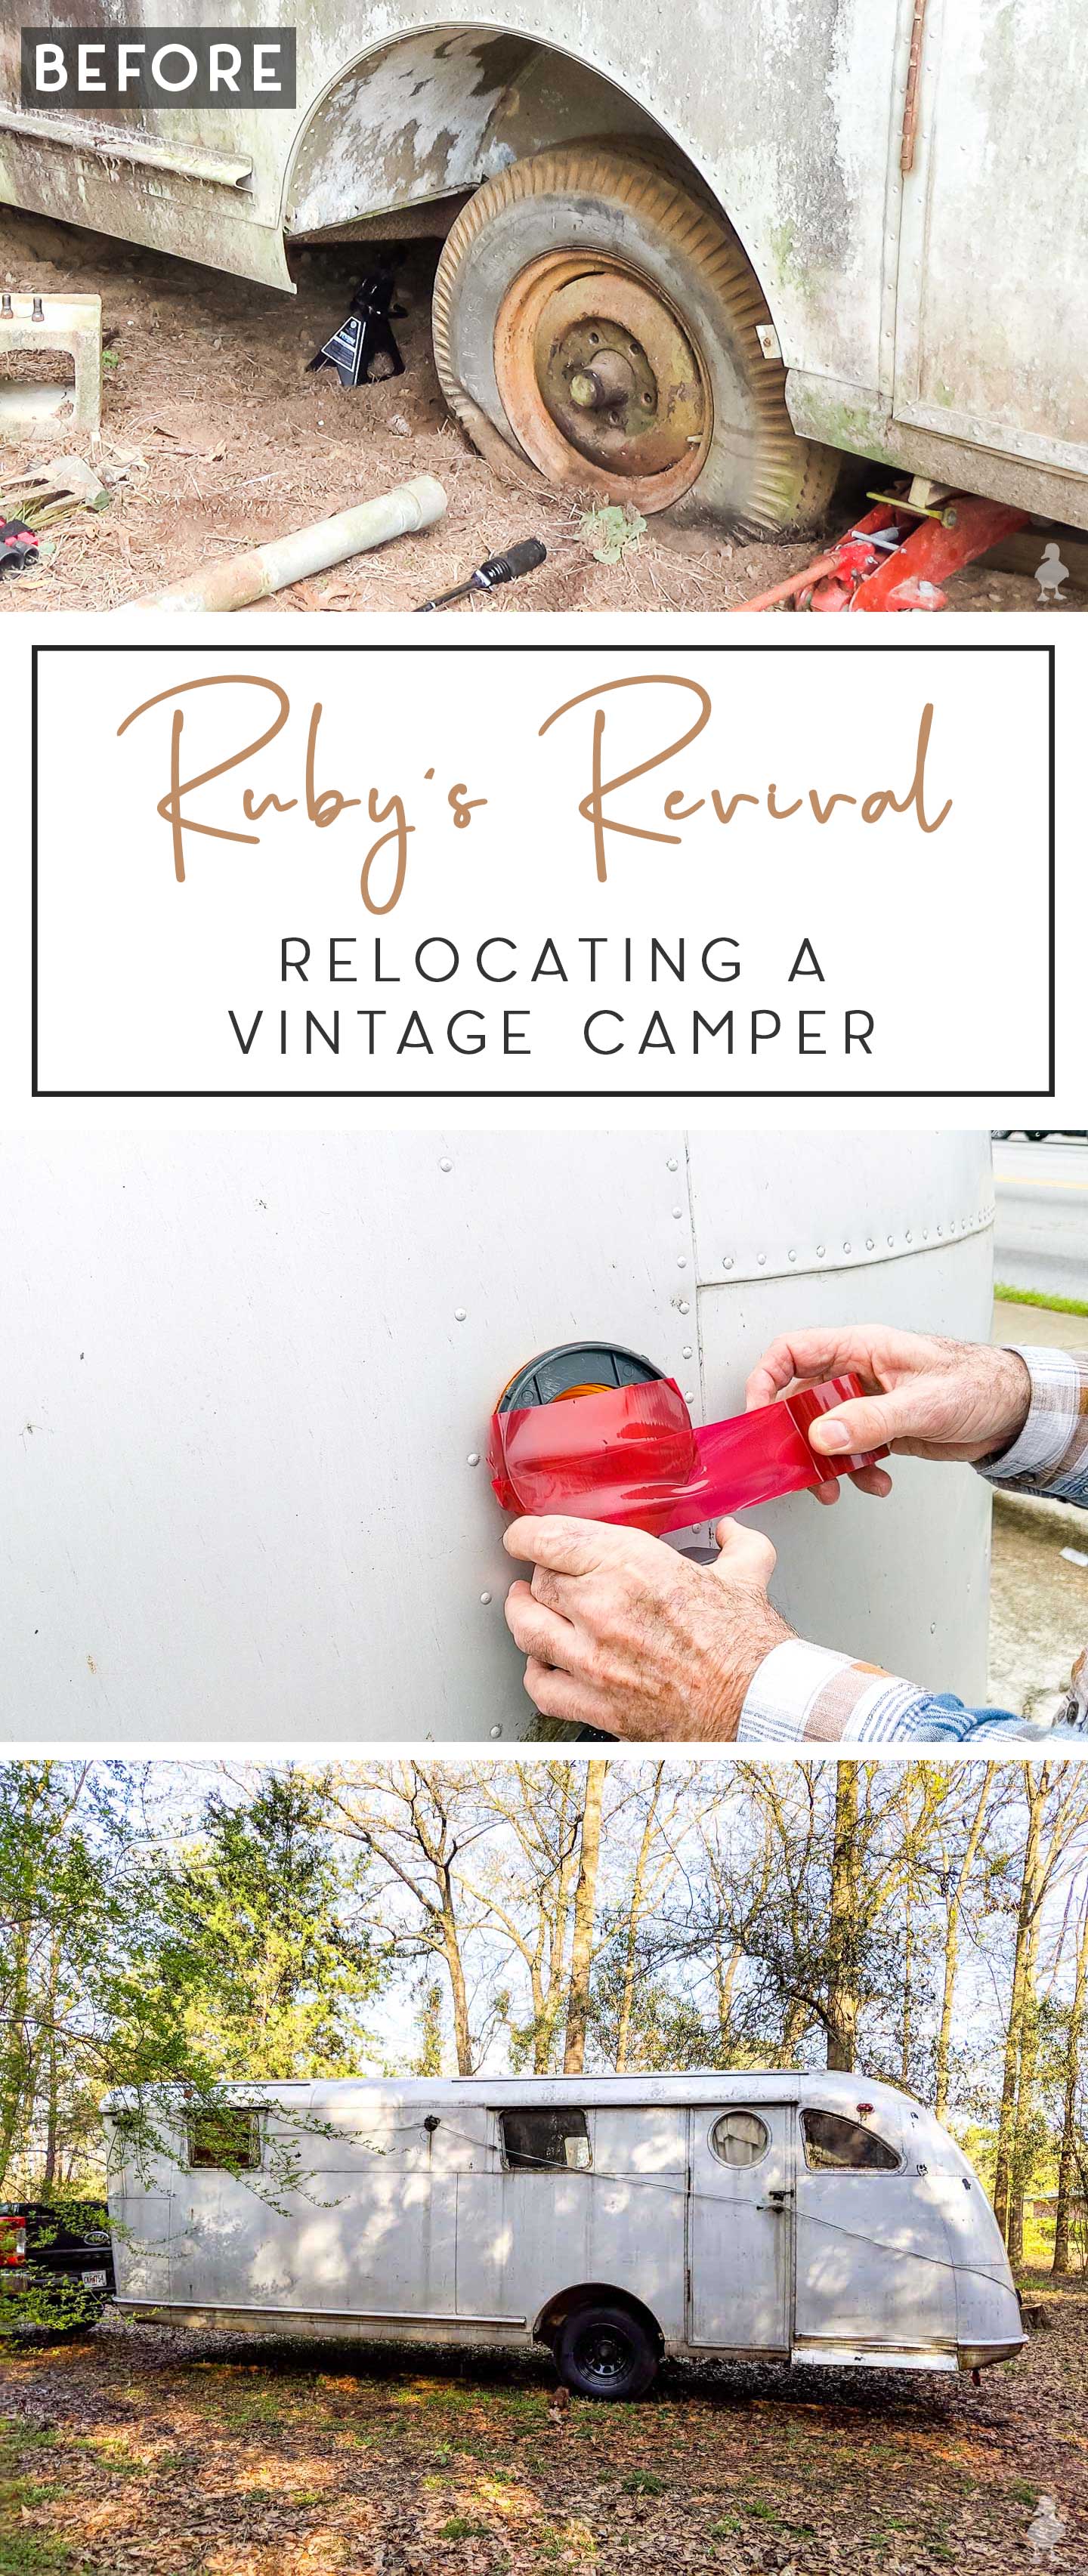 relocating a vintage camper